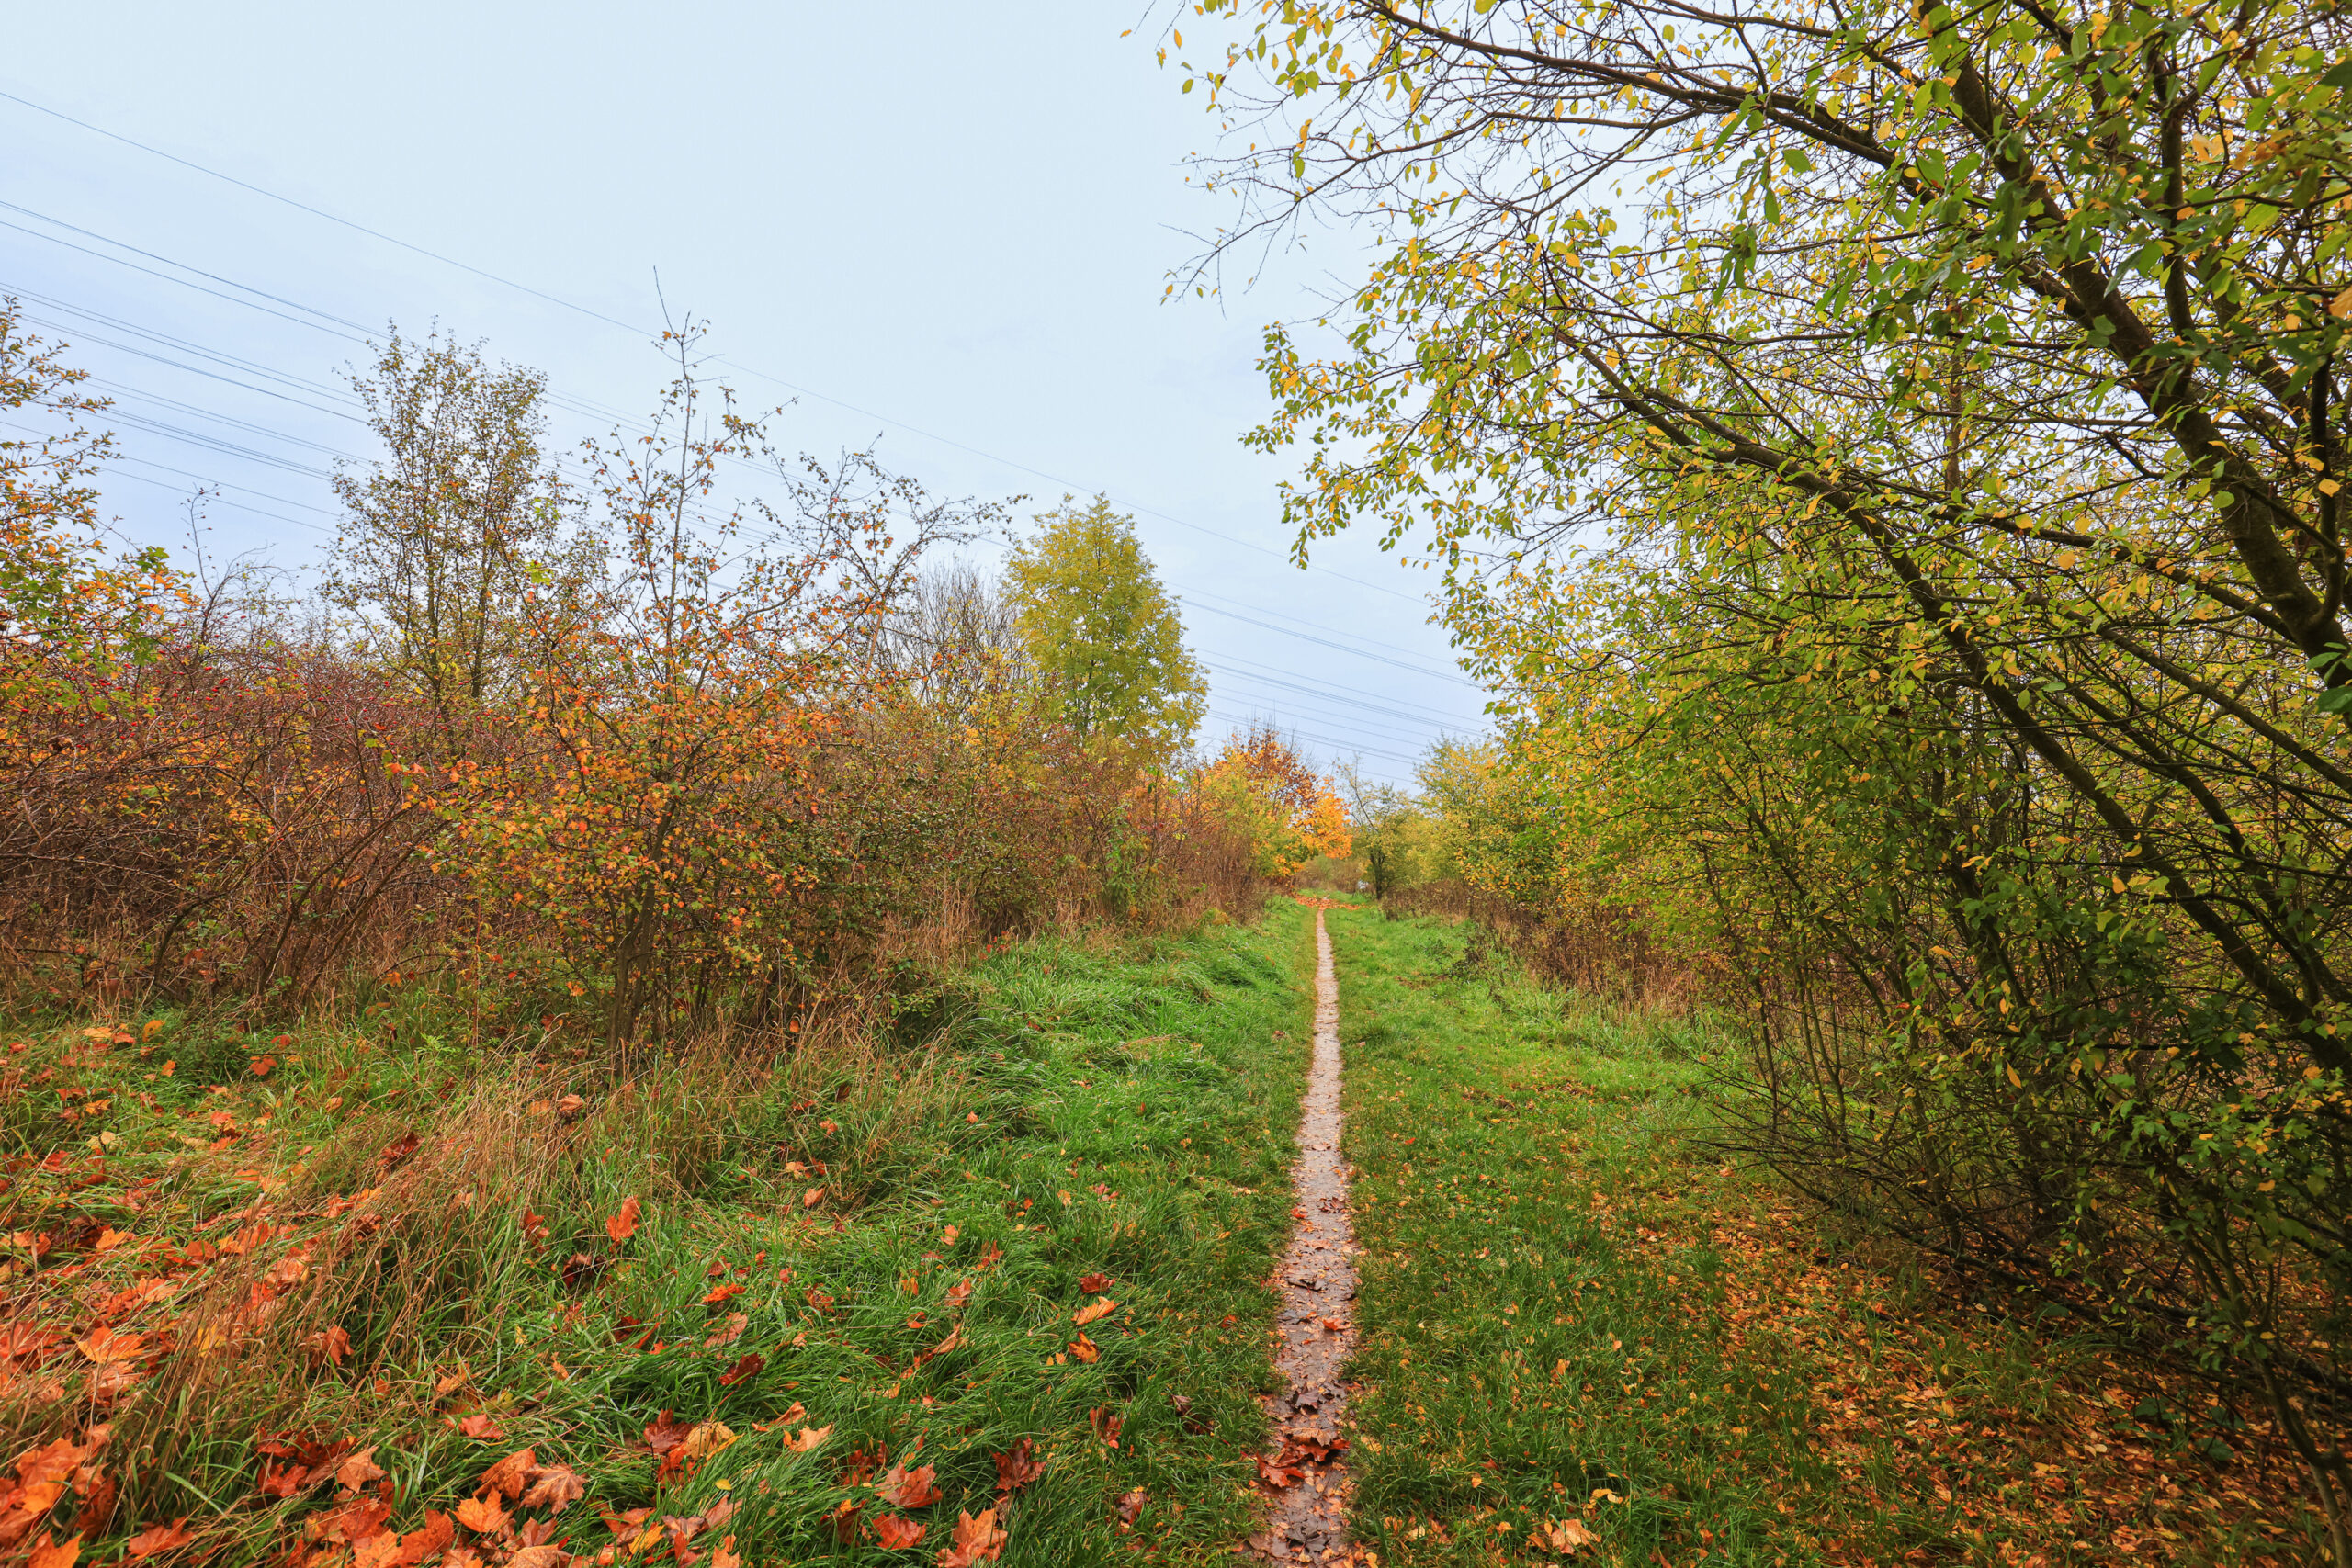 <h1>Vrch Mikulka</h1><br />
Středem snímku směrem na pozadí prochází přímá úzká pěšina, kterou po obou stranách lemuje trávník a dále od cesty nízké porosty náletových dřevin. Podzimní výjev.